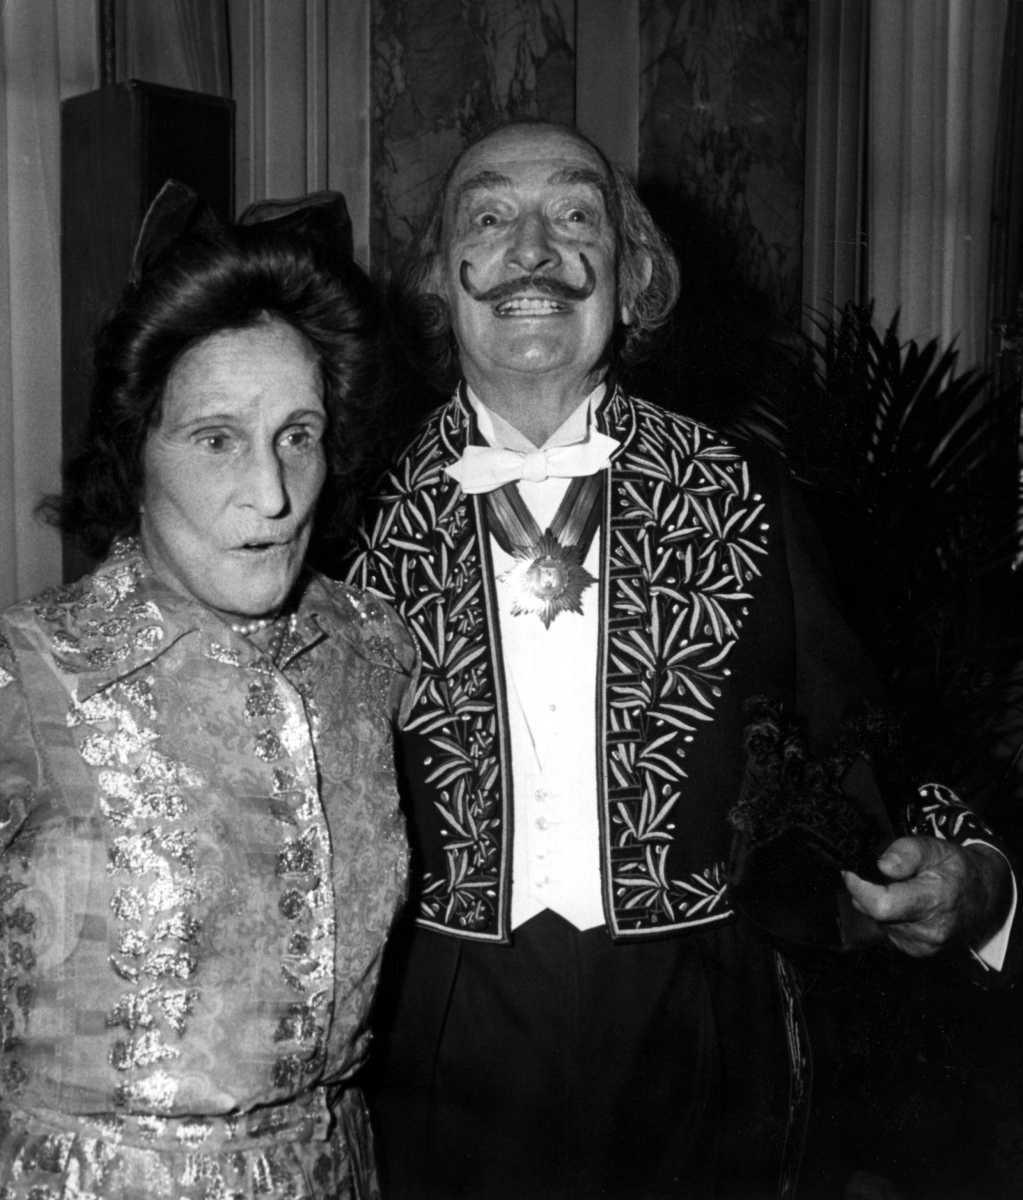 [Focus] - Le 11 mai 1904 naissait Salvador Dalí, le maître du surréalisme